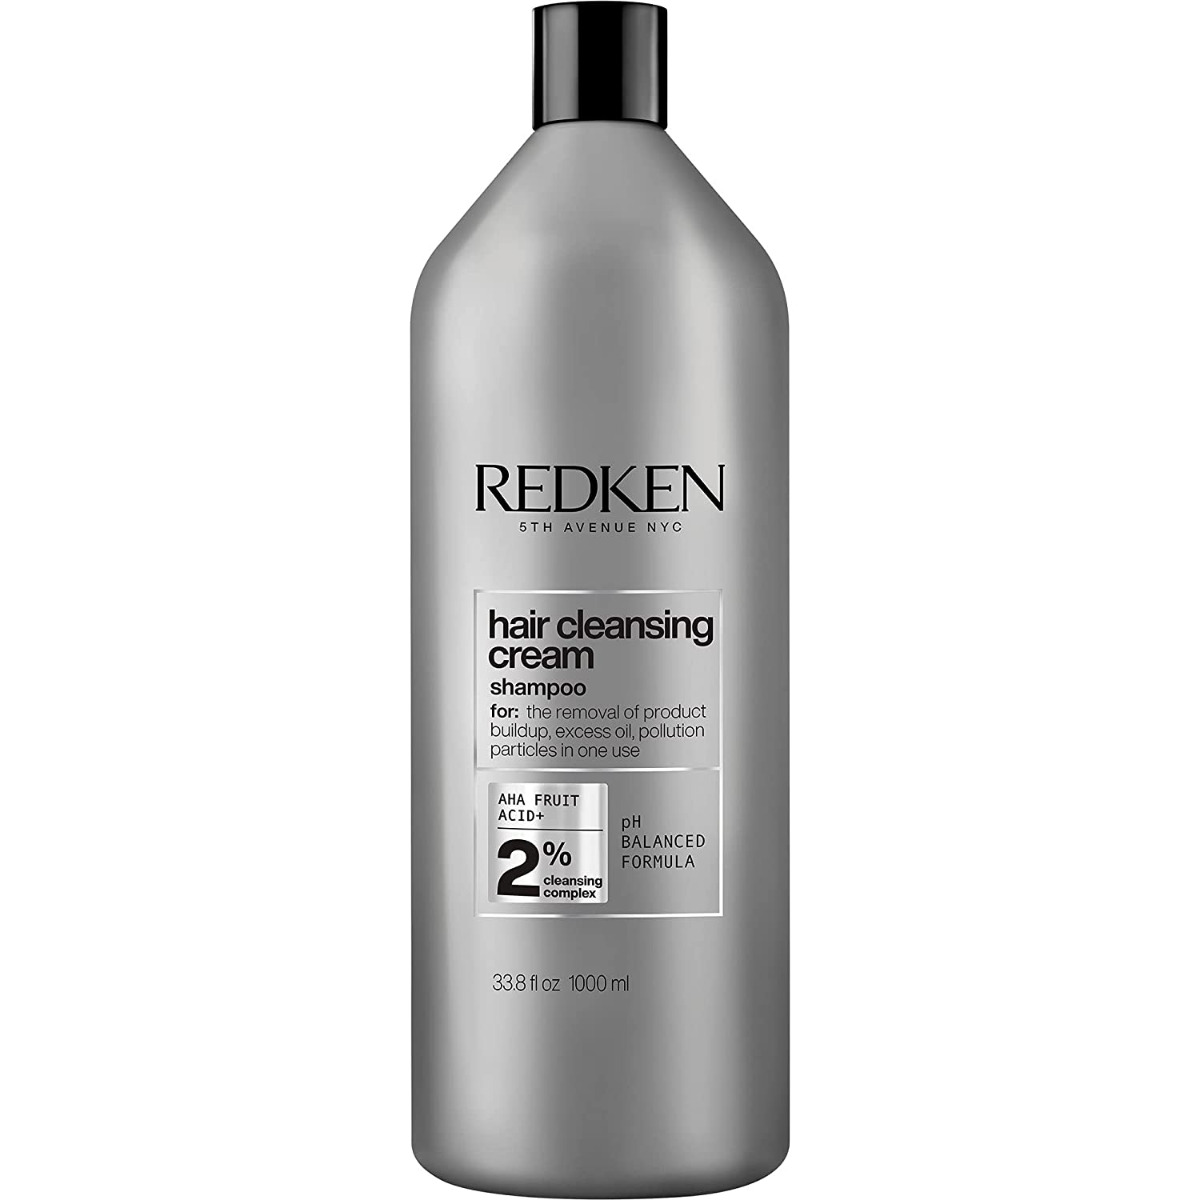 Redken Detox Hair Cleansing Cream 1000ml 33.8oz - image 1 of 2